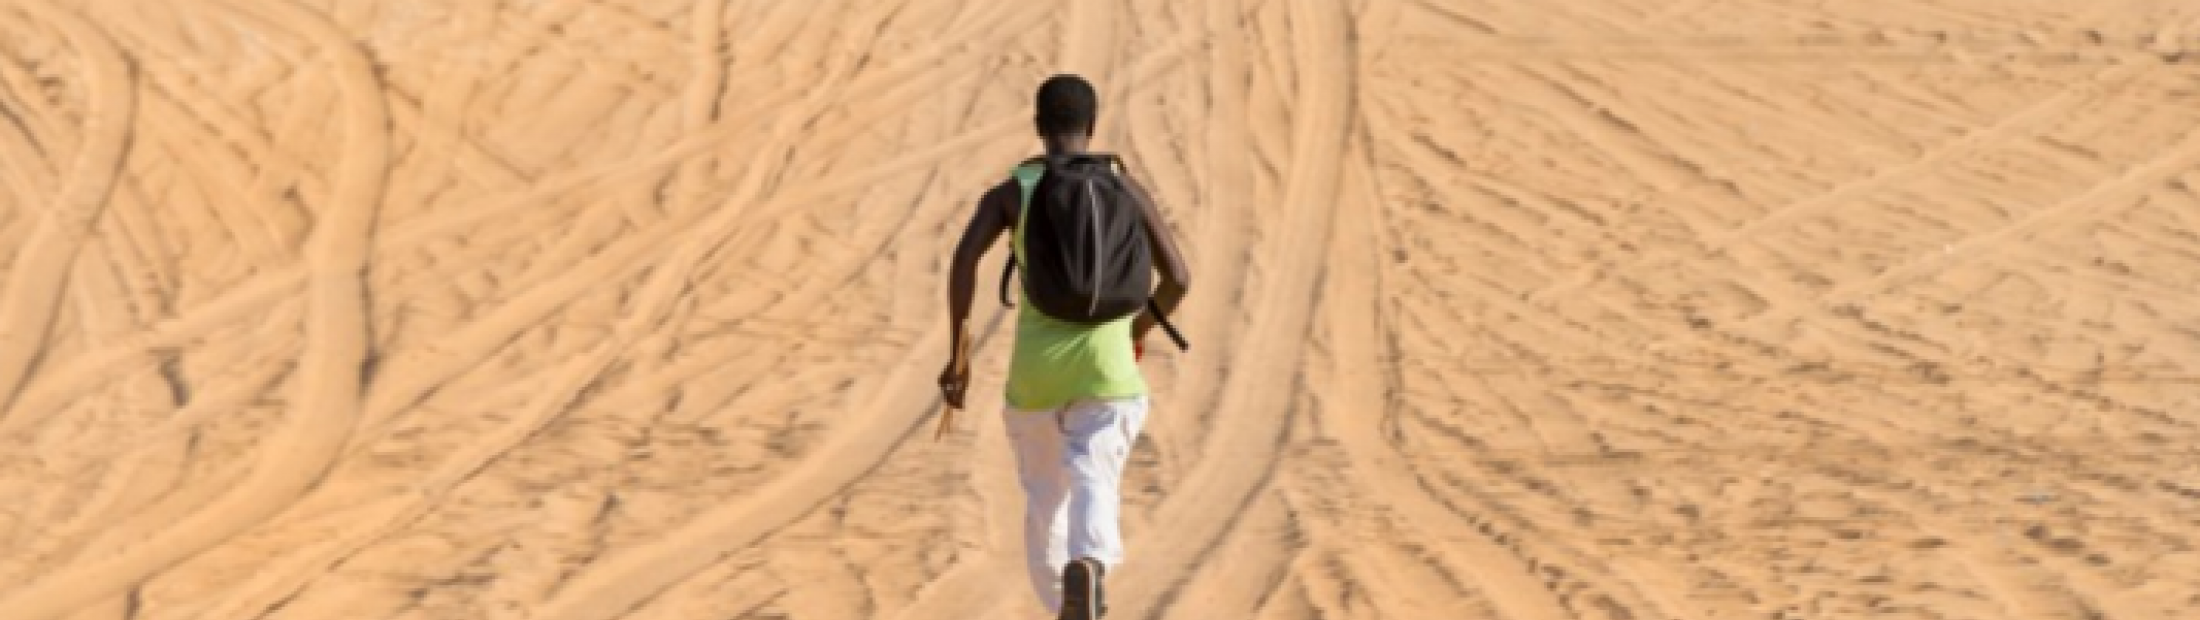 La vida en los campamentos de refugiados saharauis